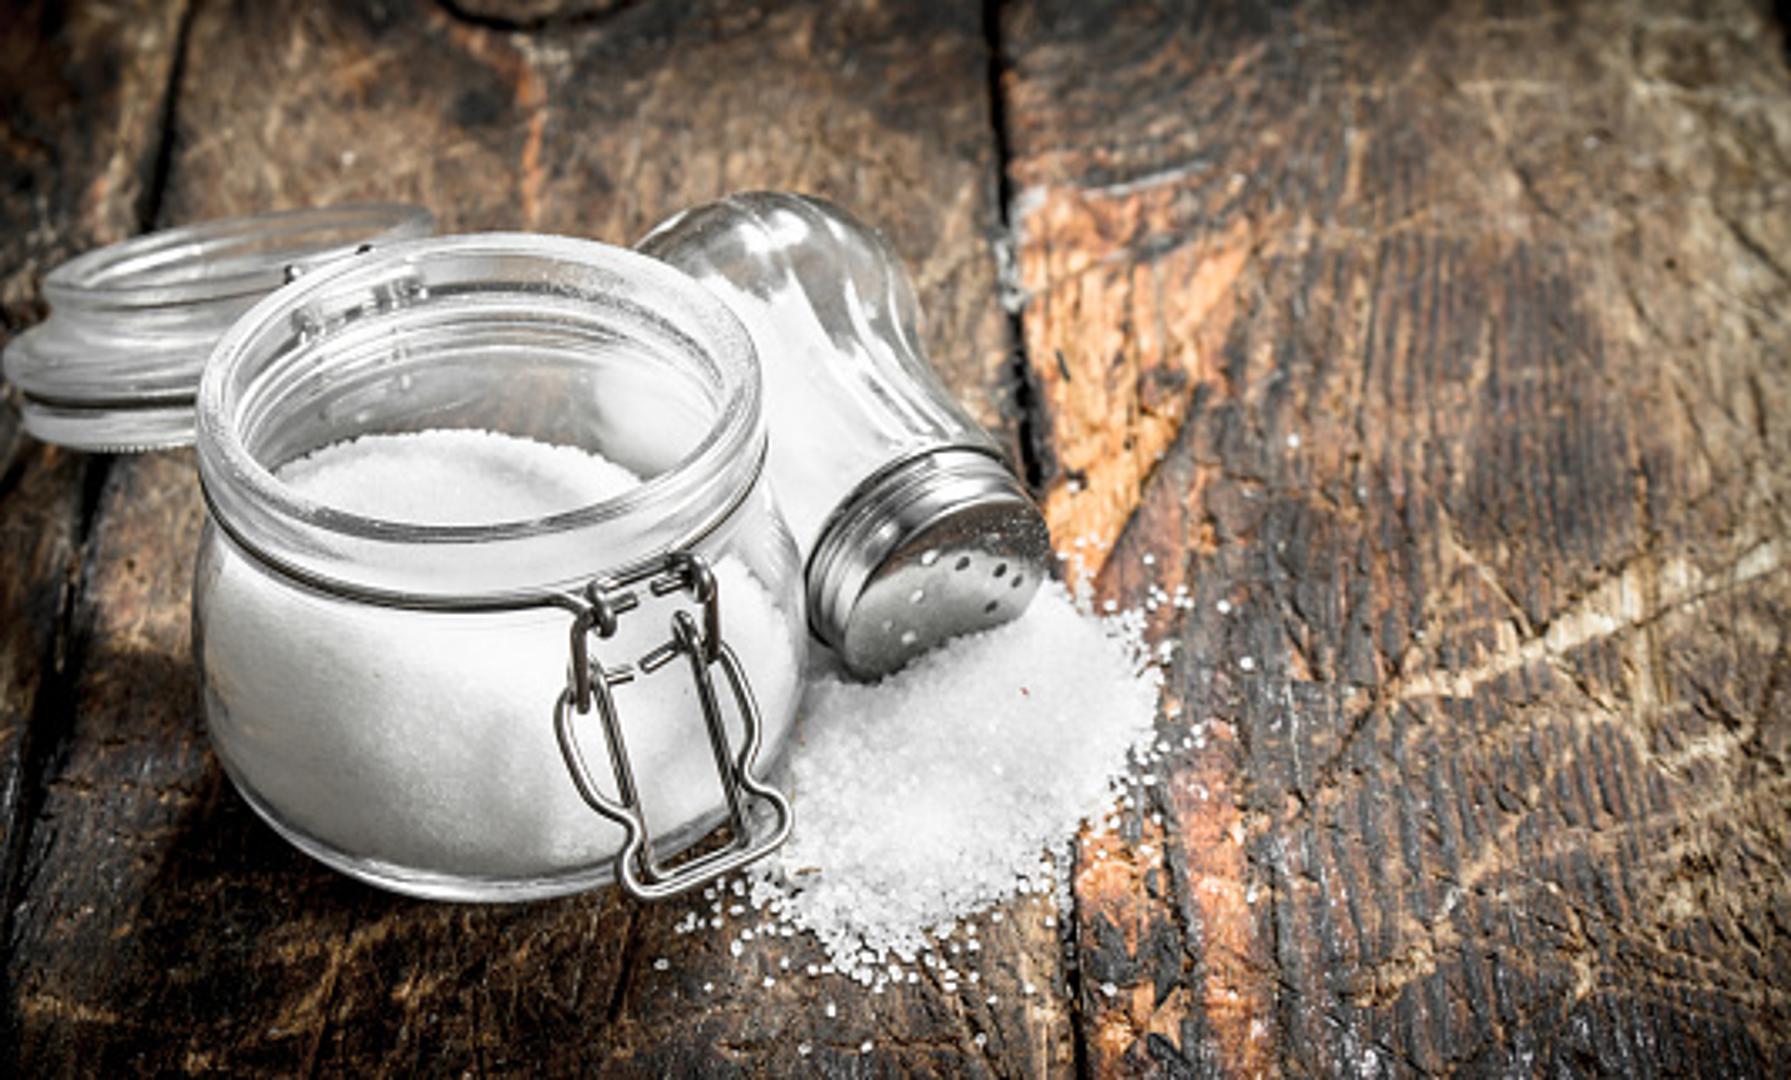 Sol je neizostavni začin u svakoj kuhinji i važan je za naše tijelo. Ali, u umjerenoj količini. Od davnina se koristi za zimnice i čuvanje namirnica, a u jela se dodaje kako bi "zaokružila okus". Upoznat ćemo vas s nekoliko zanimljivih činjenica koje možda niste do sada znali o soli...
